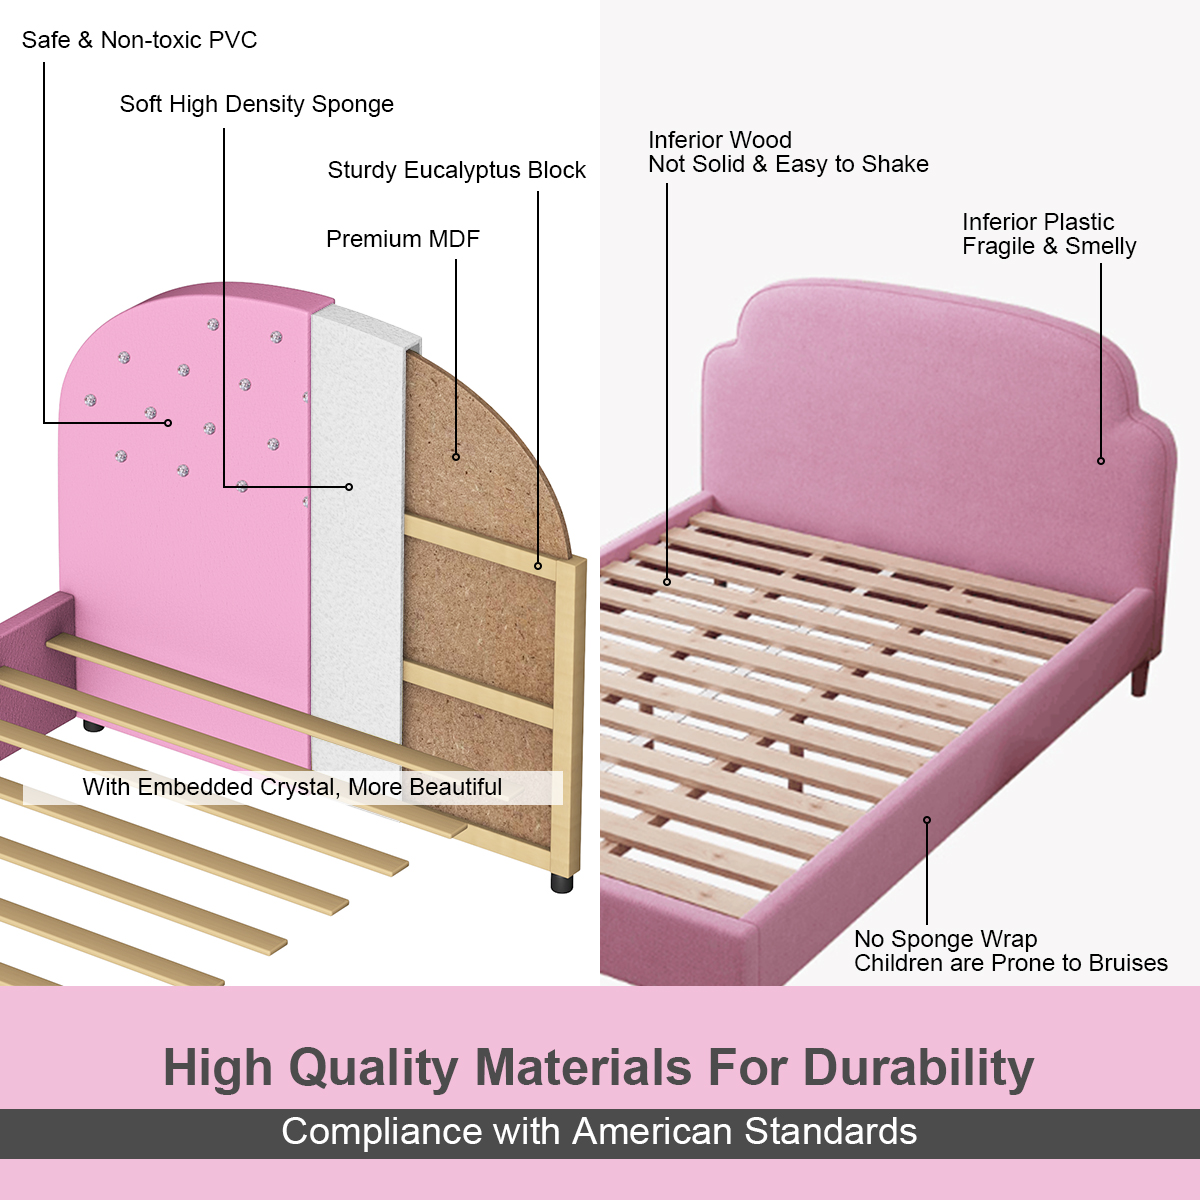 Costway Kids Children PU Upholstered Platform Wooden Princess Bed Bedroom Furniture Pink - image 5 of 9